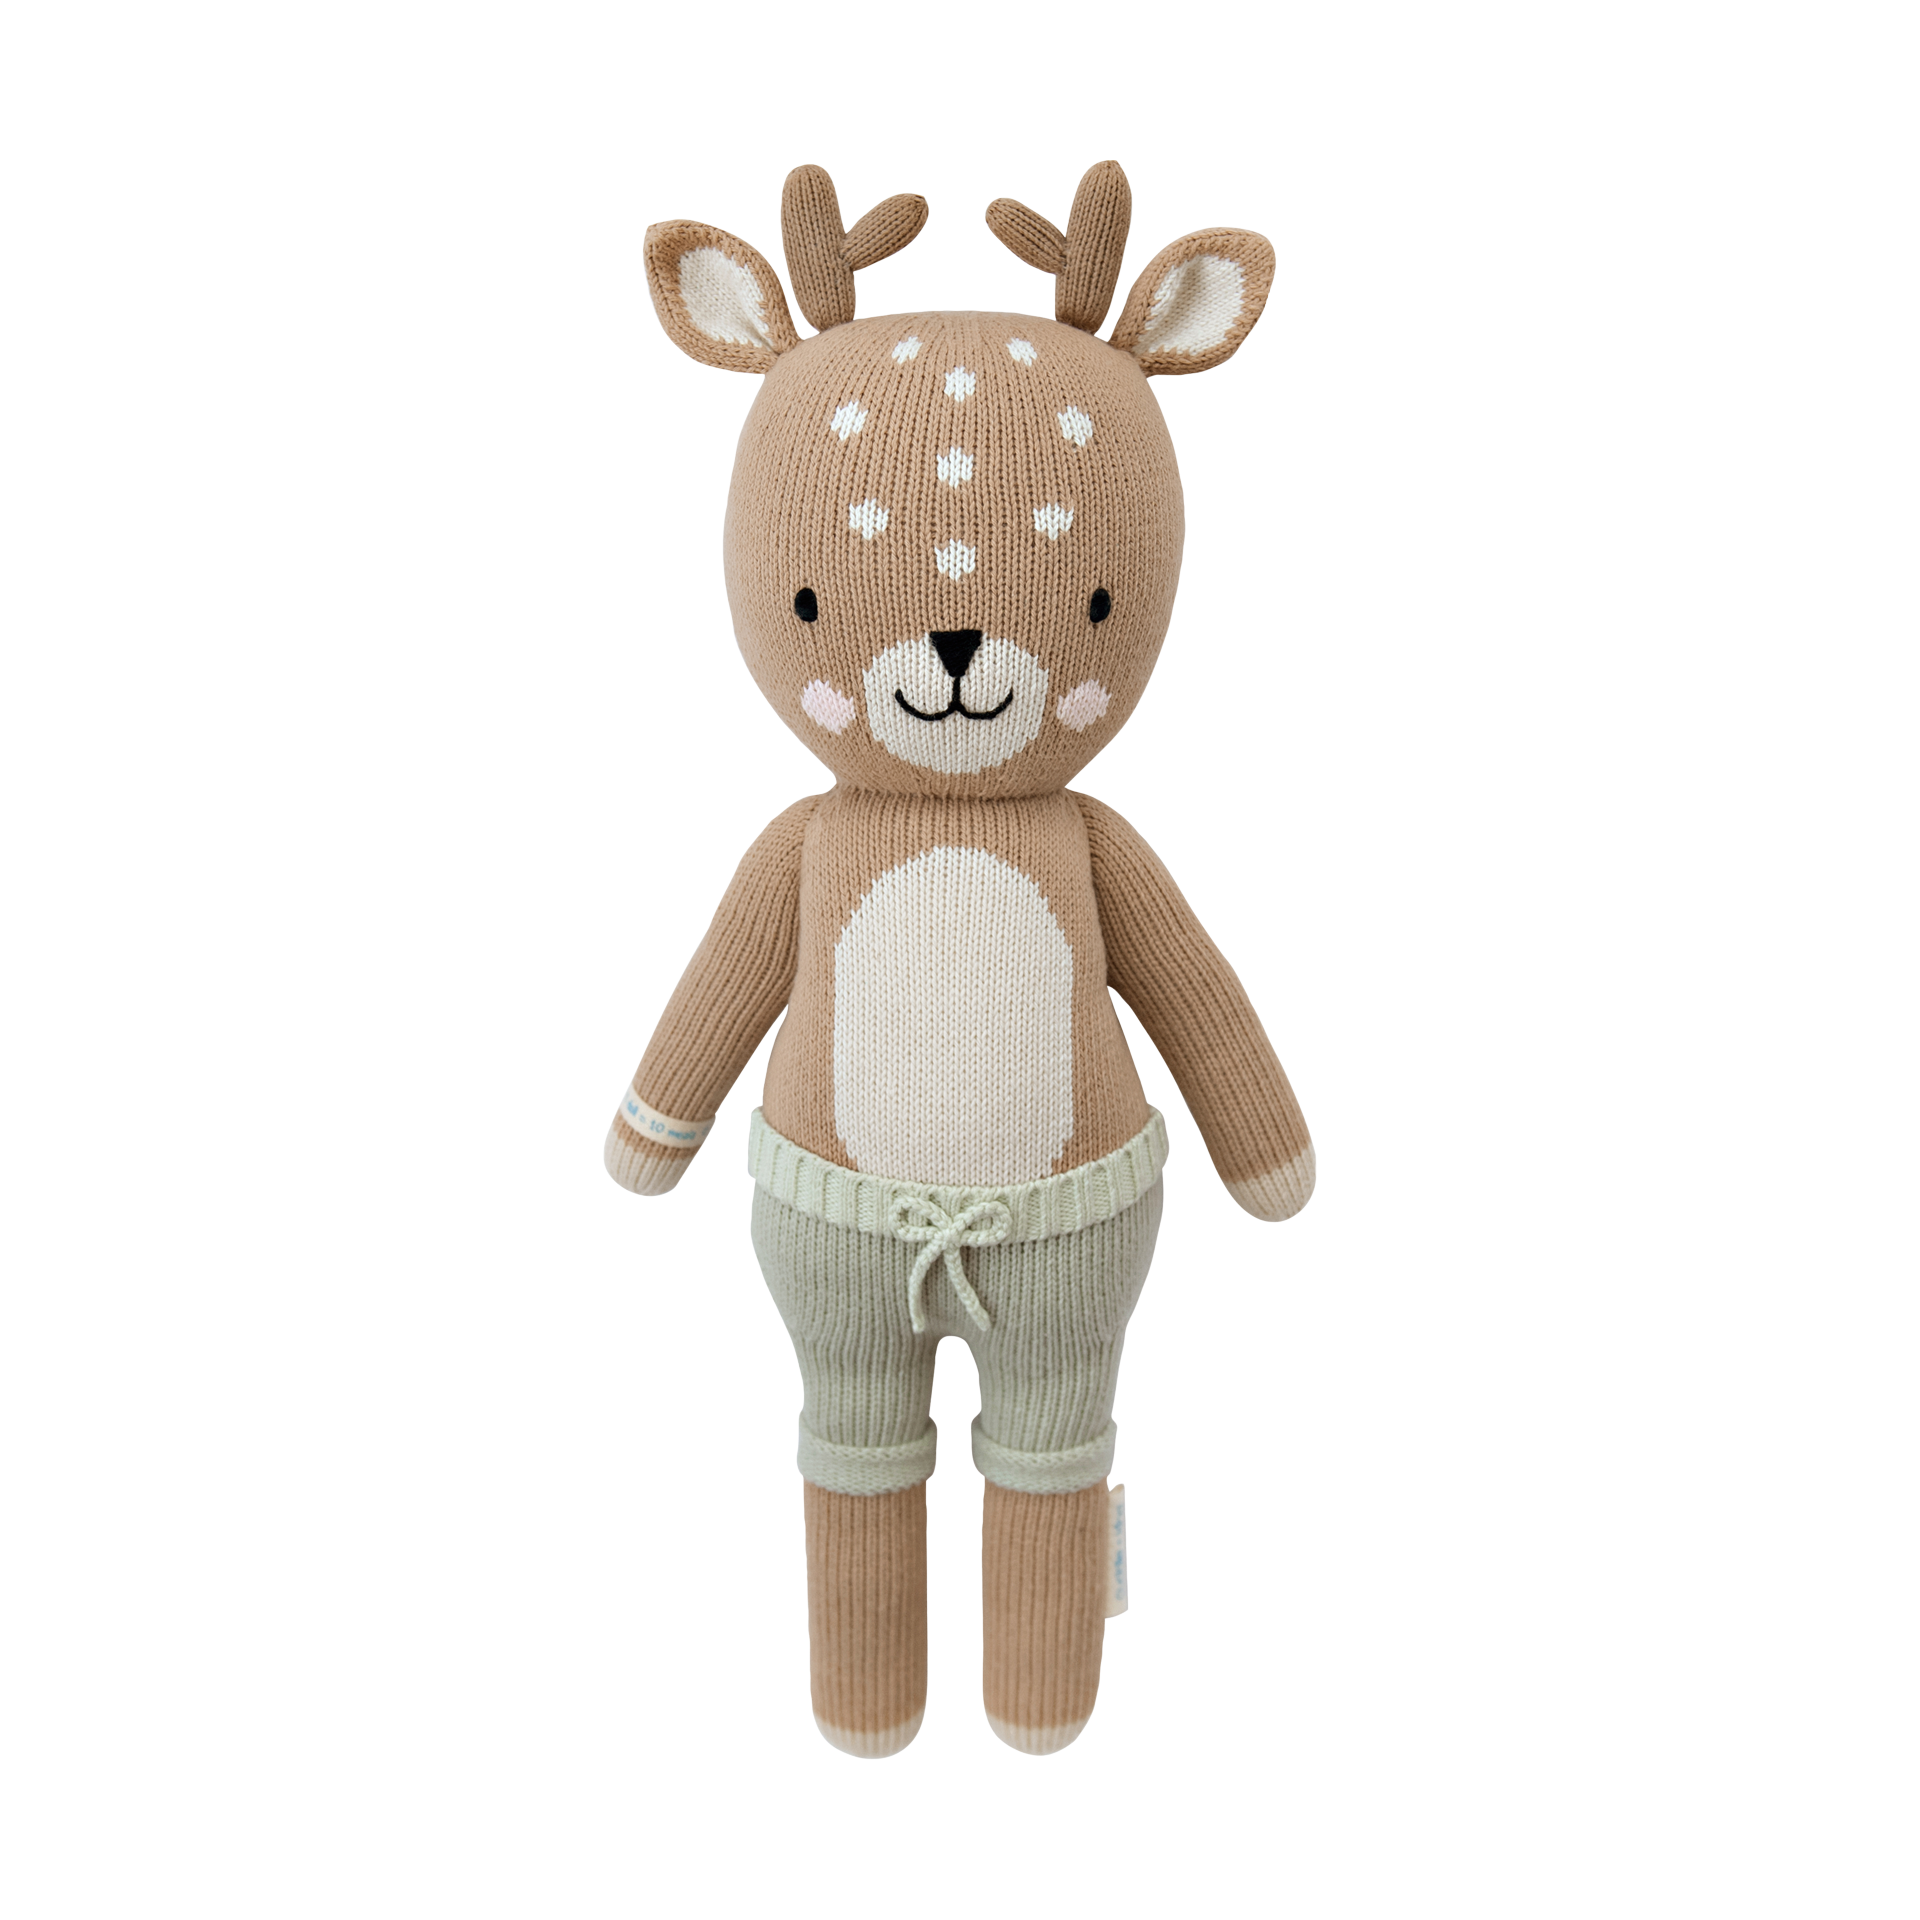 stuffy stuffed animal